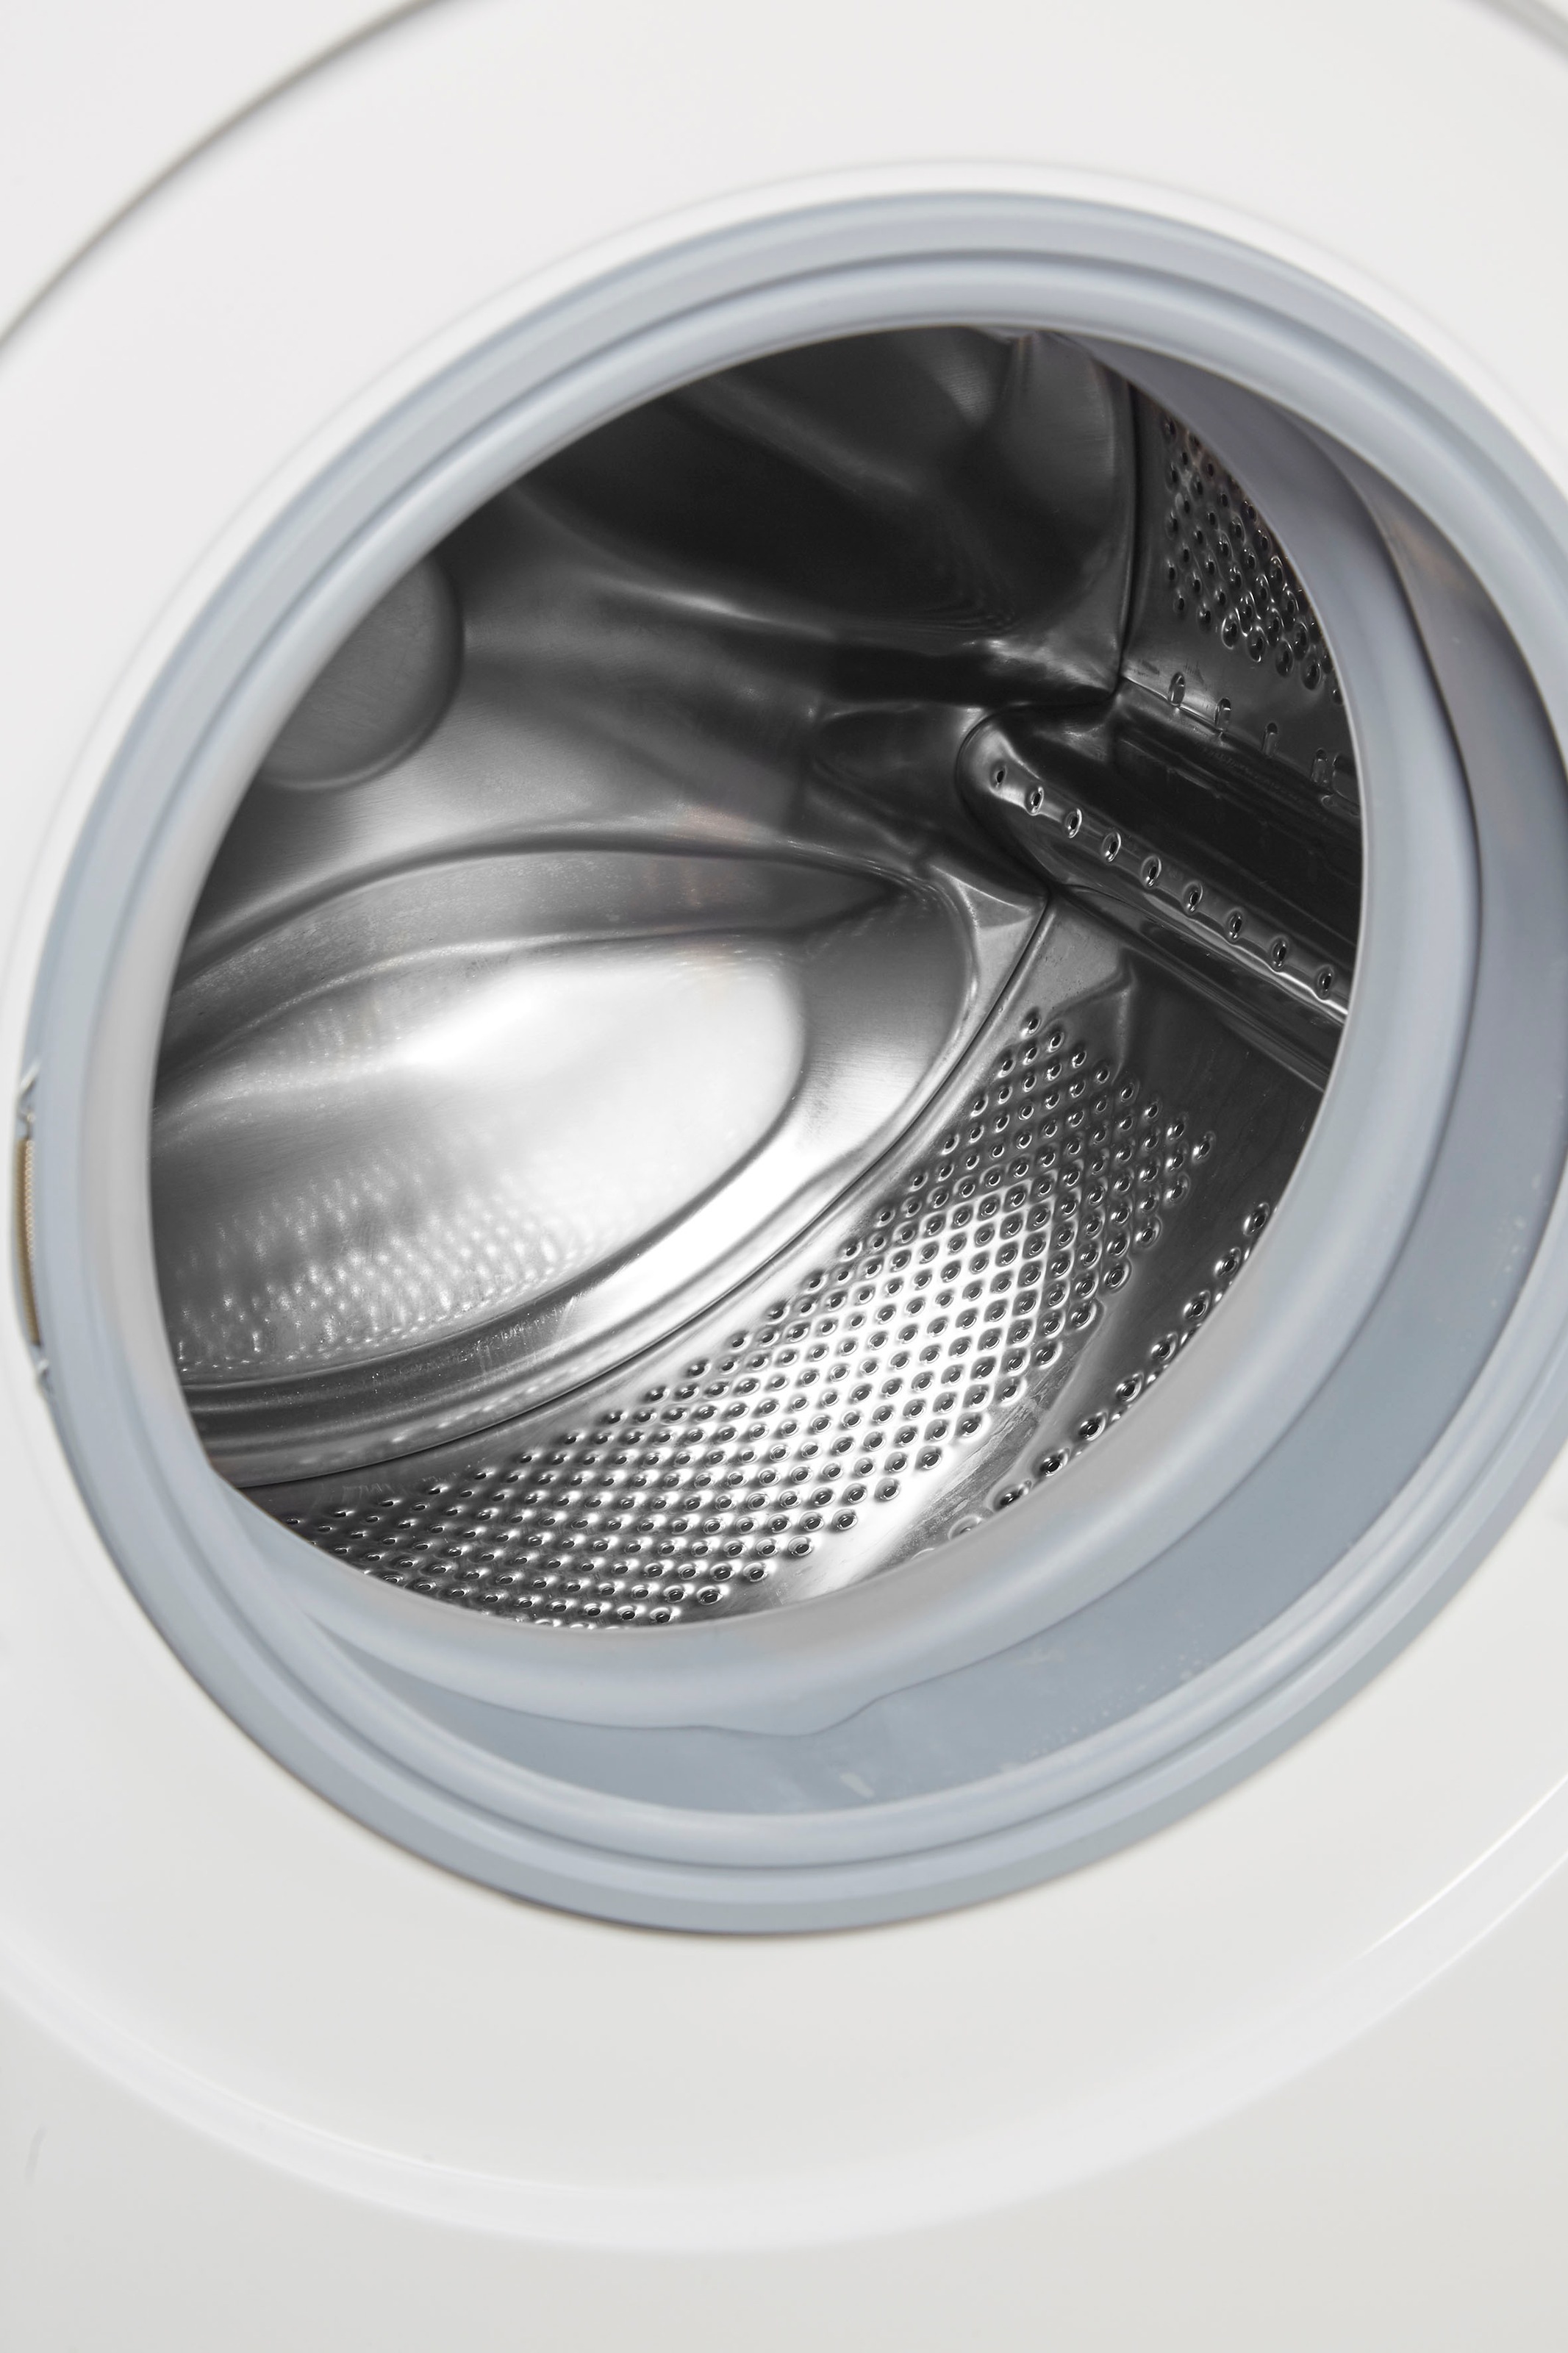 BOSCH Waschmaschine, WAN28128, 8 kg, 1400 U/min online kaufen | Waschmaschinen